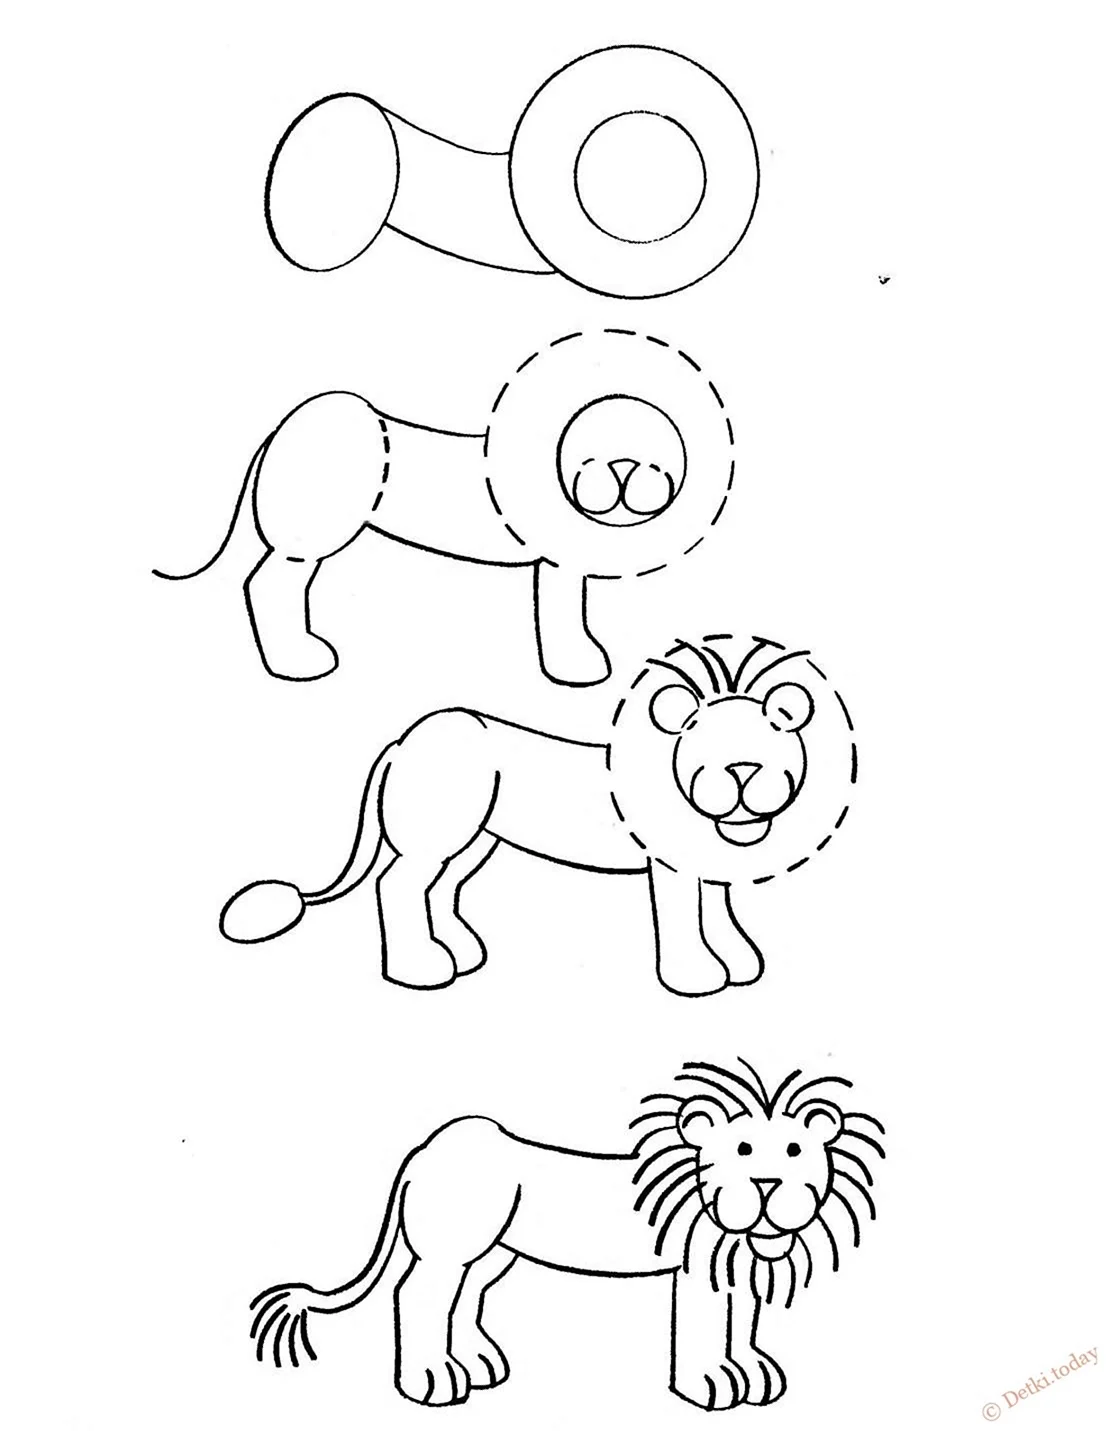 Рисунок Льва карандашом для срисовки. Для срисовки